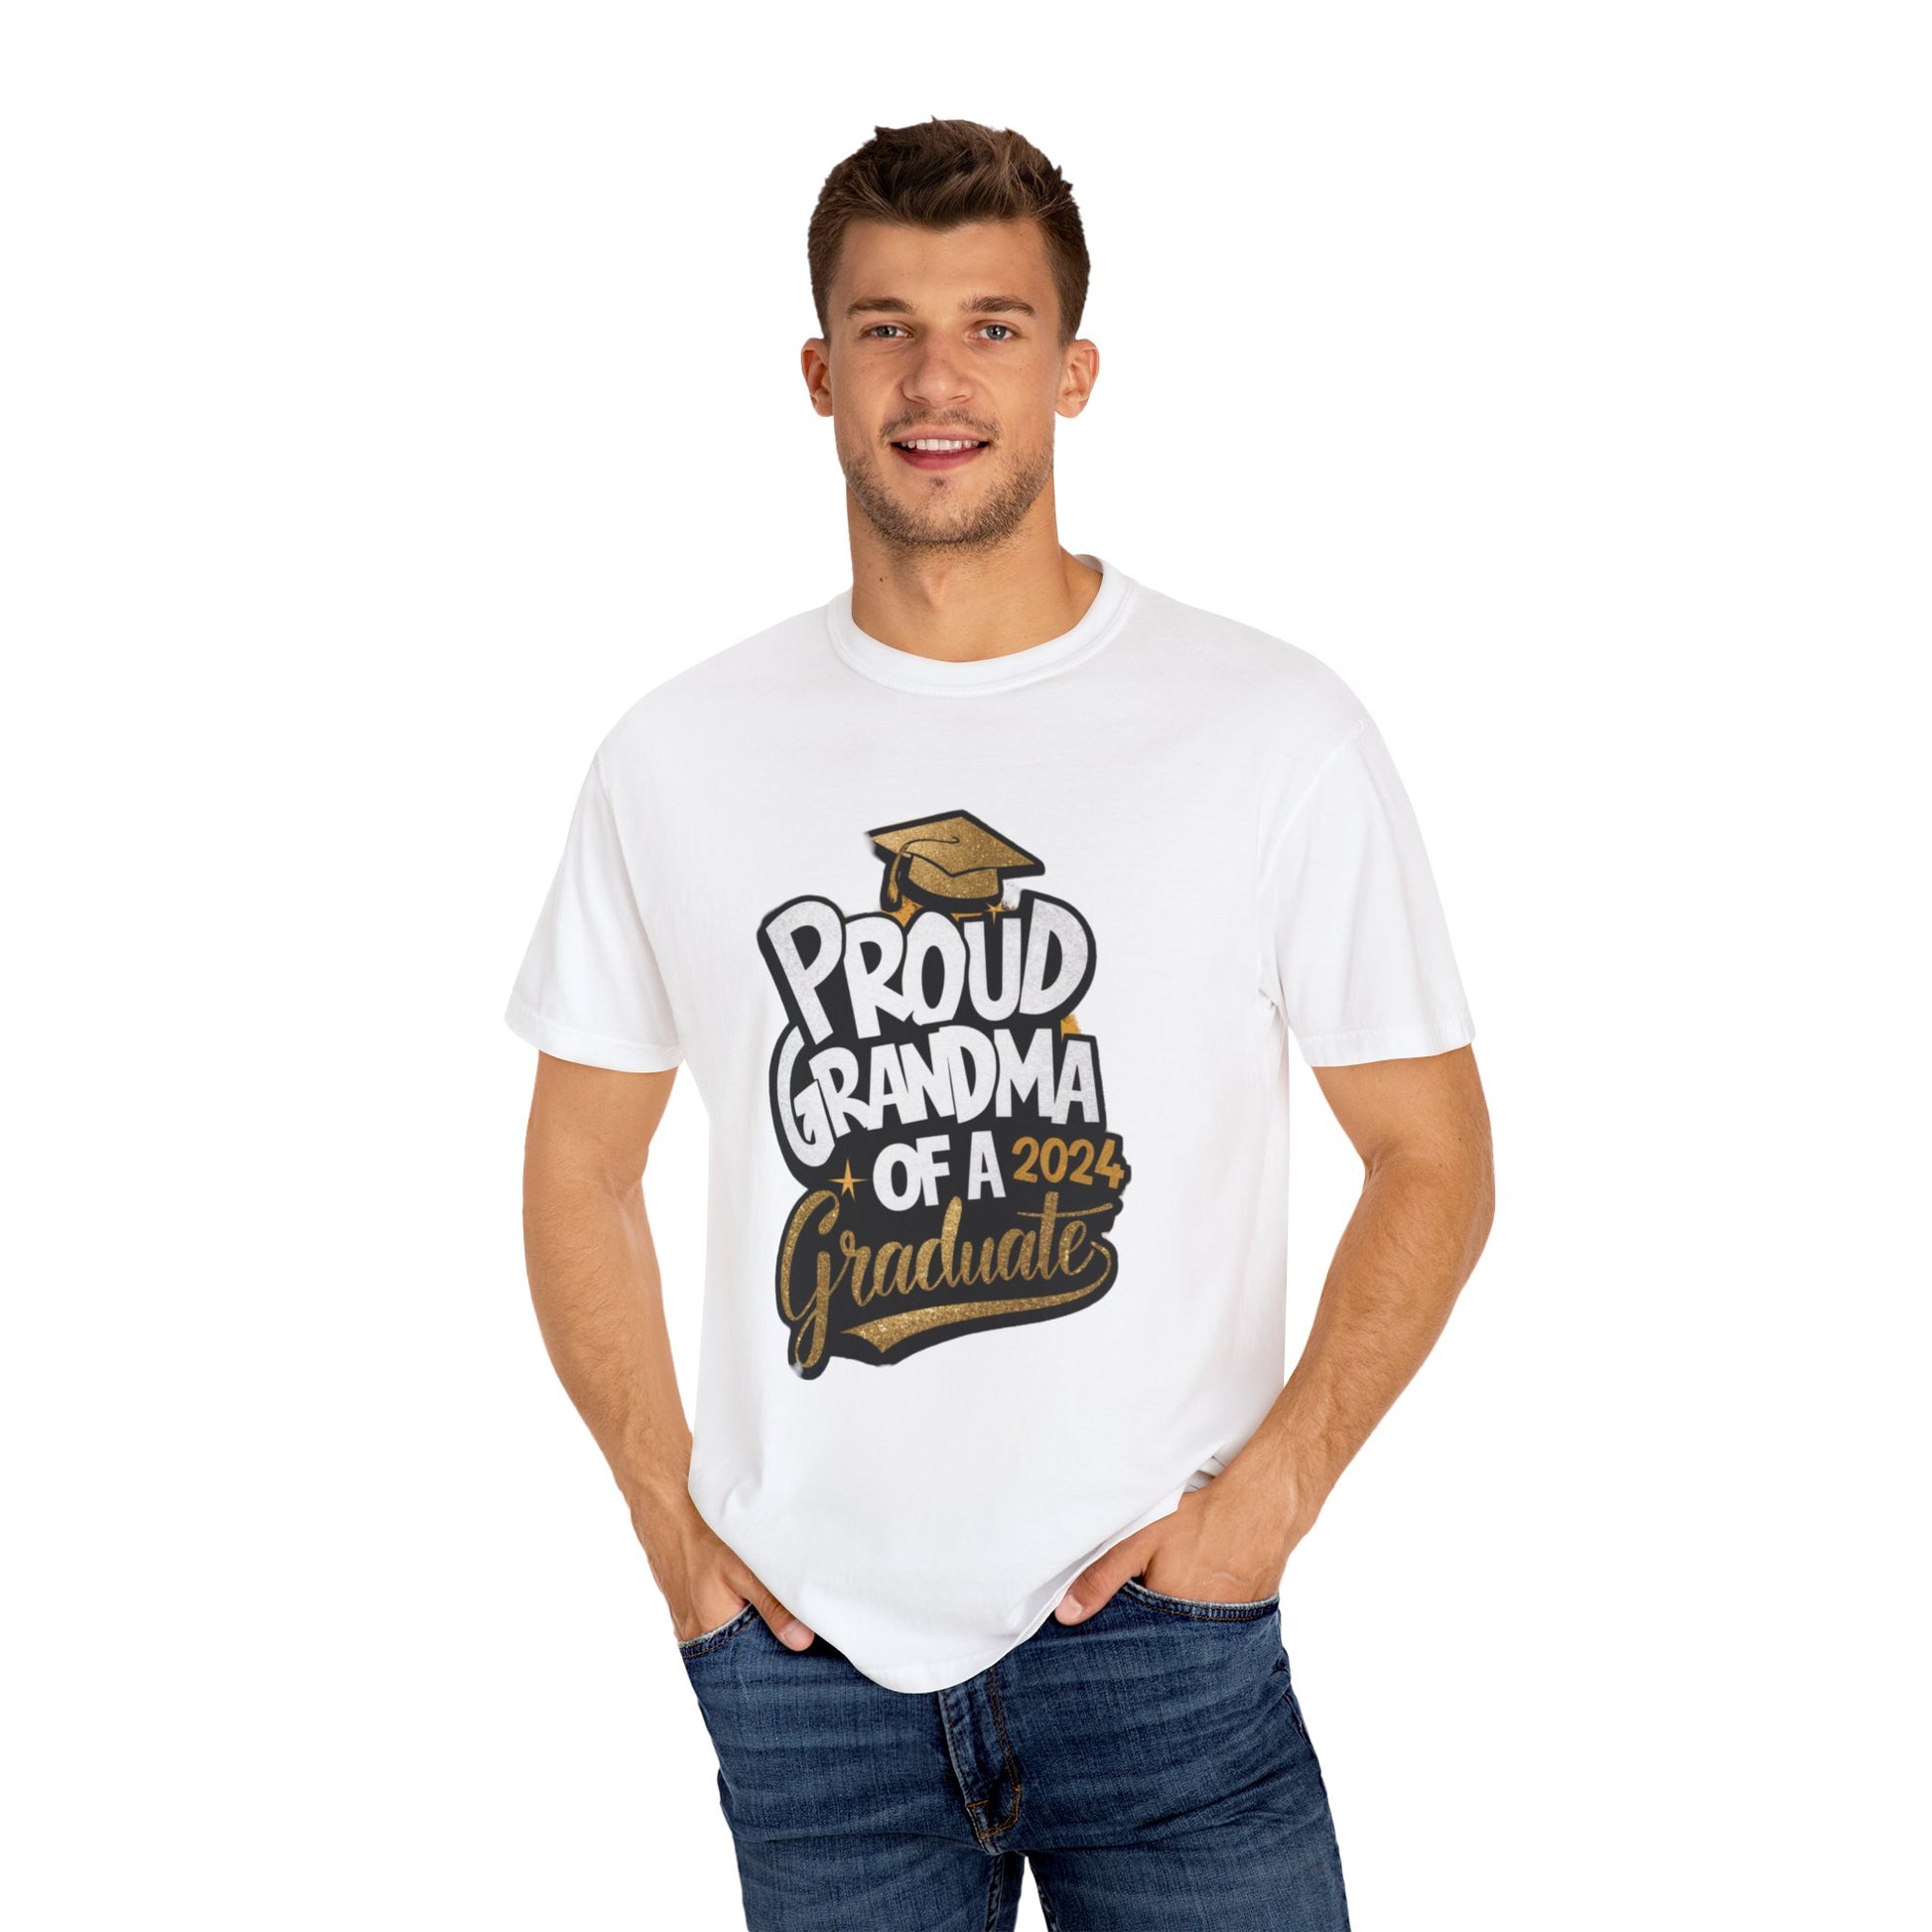 Proud of Grandma 2024 Graduate Unisex Garment-dyed T-shirt Cotton Funny Humorous Graphic Soft Premium Unisex Men Women White  T-shirt Birthday Gift-24